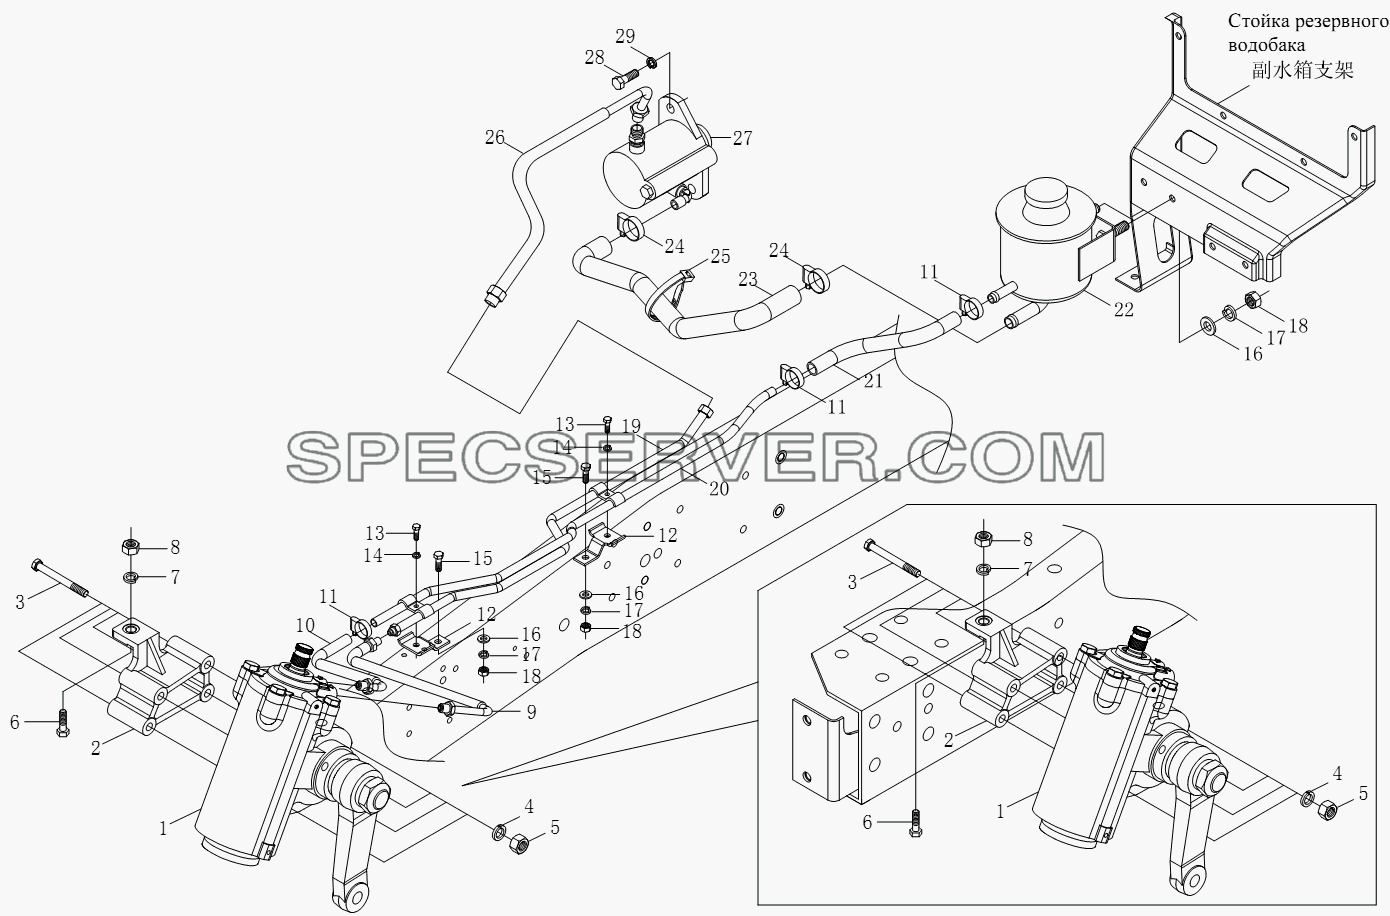 1S10513400101 Рулевой механизм и принадлежности для BJ1051, BJ1061 (Aumark) (список запасных частей)